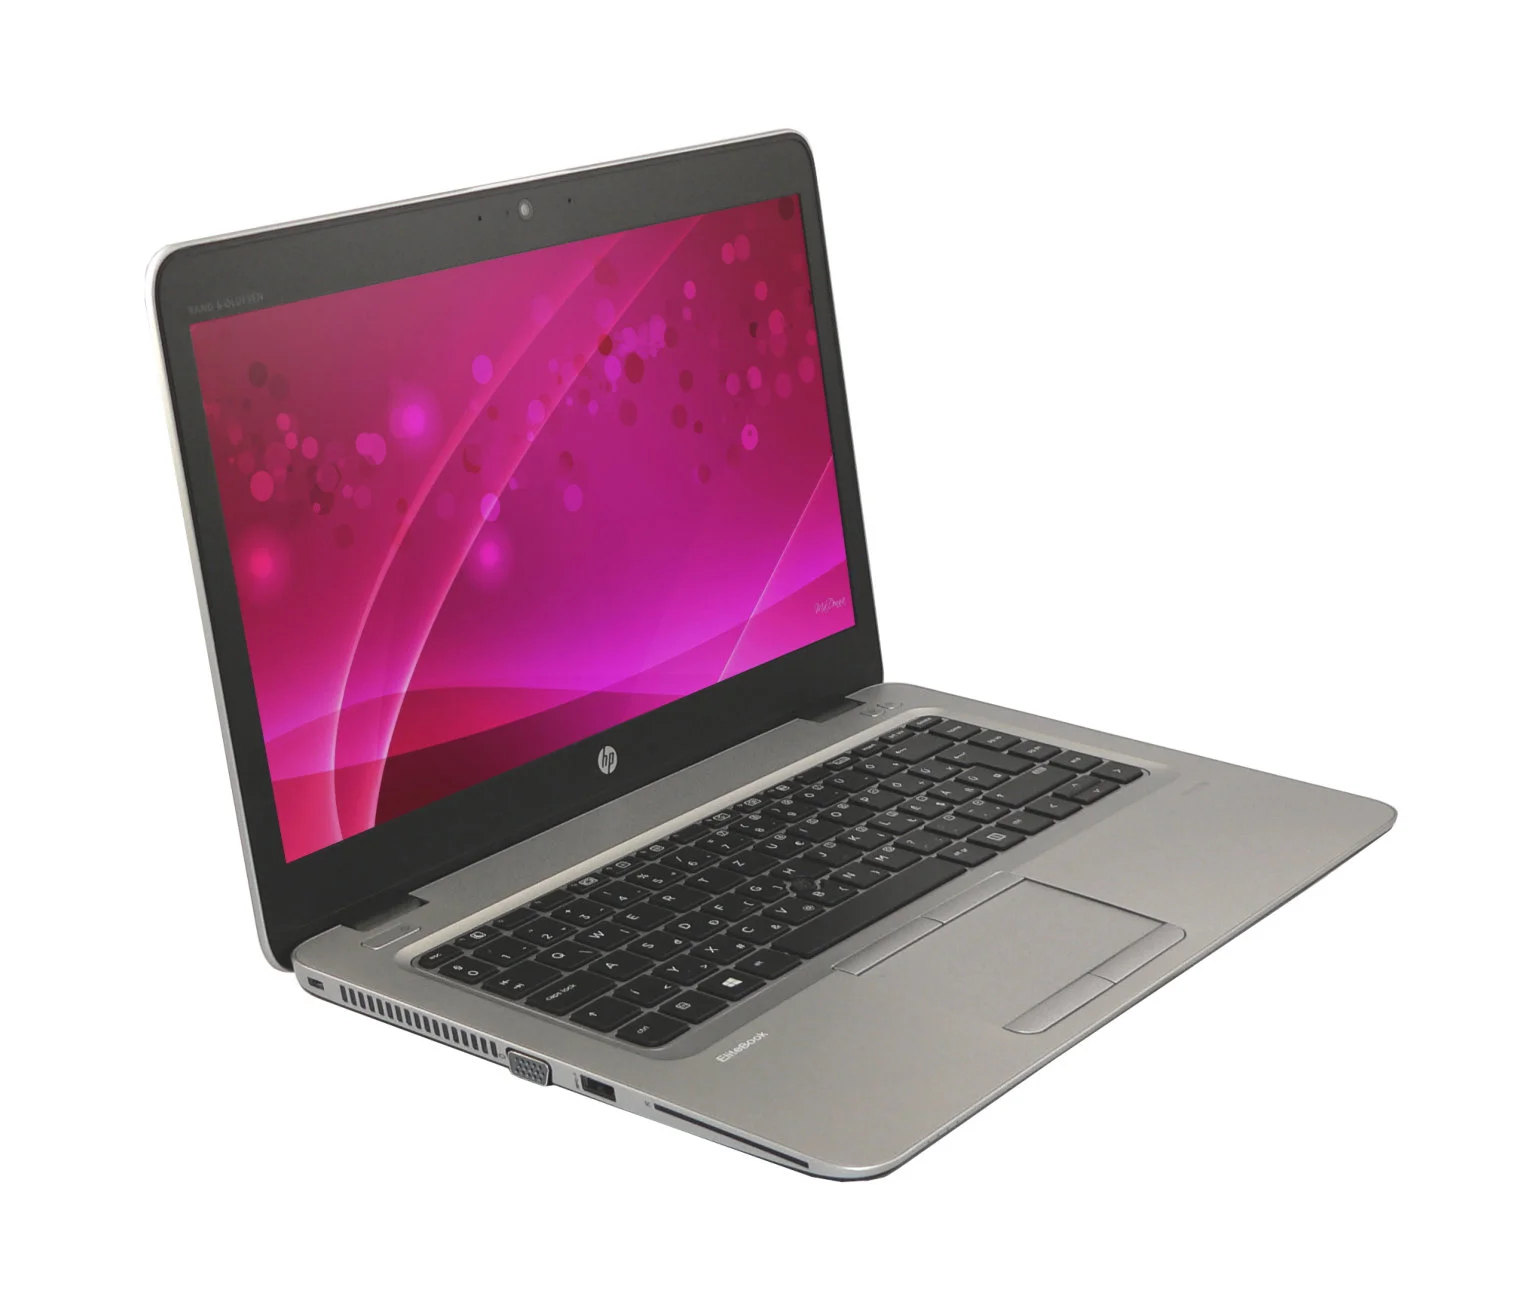 HP Elitebook 745 G4 használt laptop - AMD Pro A10-8730b 2,4 GHz, 8 GB RAM, 256 GB SSD, 14,1